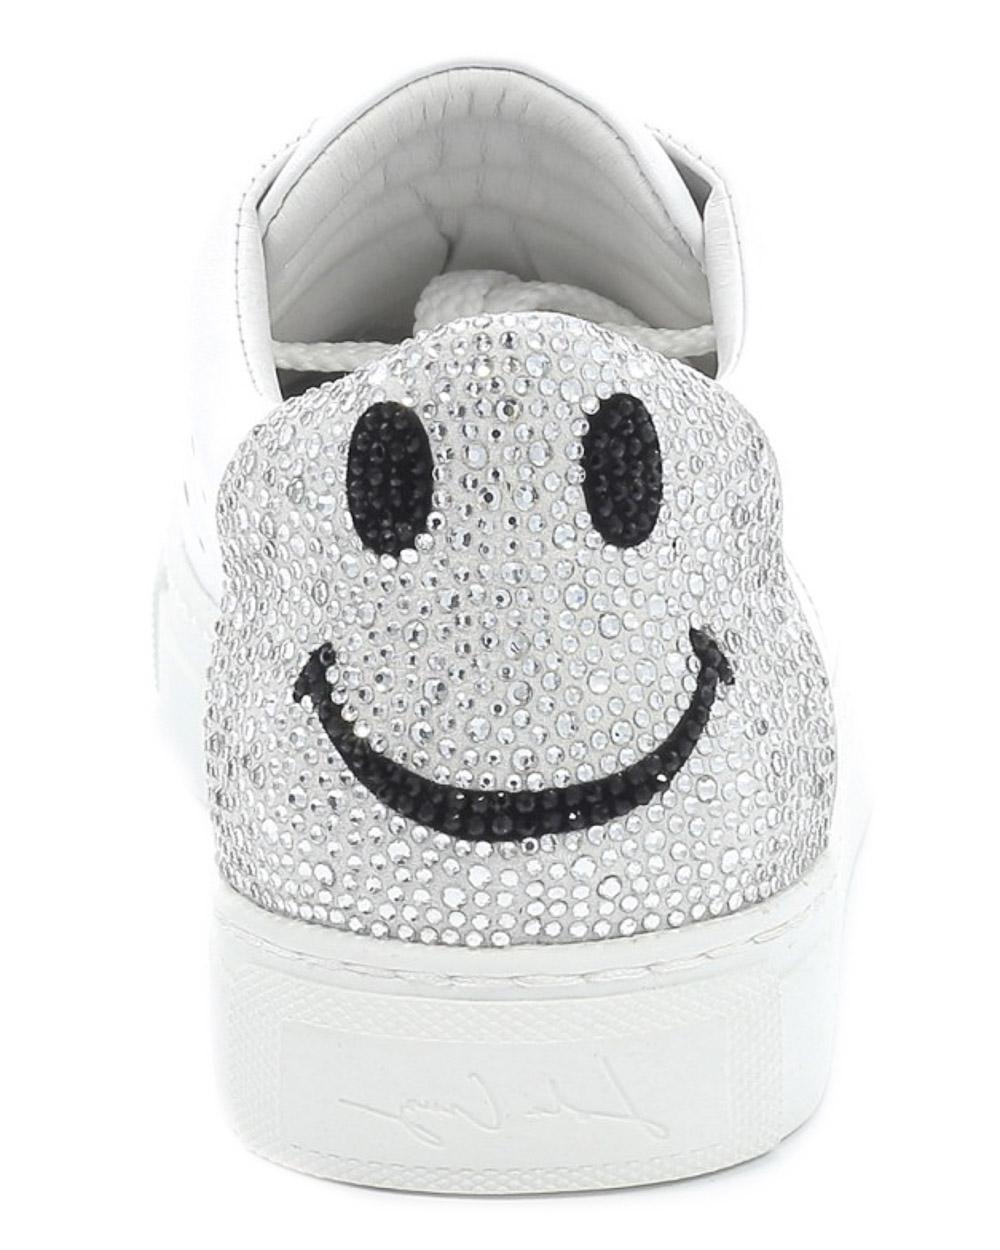 cruz smiley face sneakers Off 59% - sirinscrochet.com